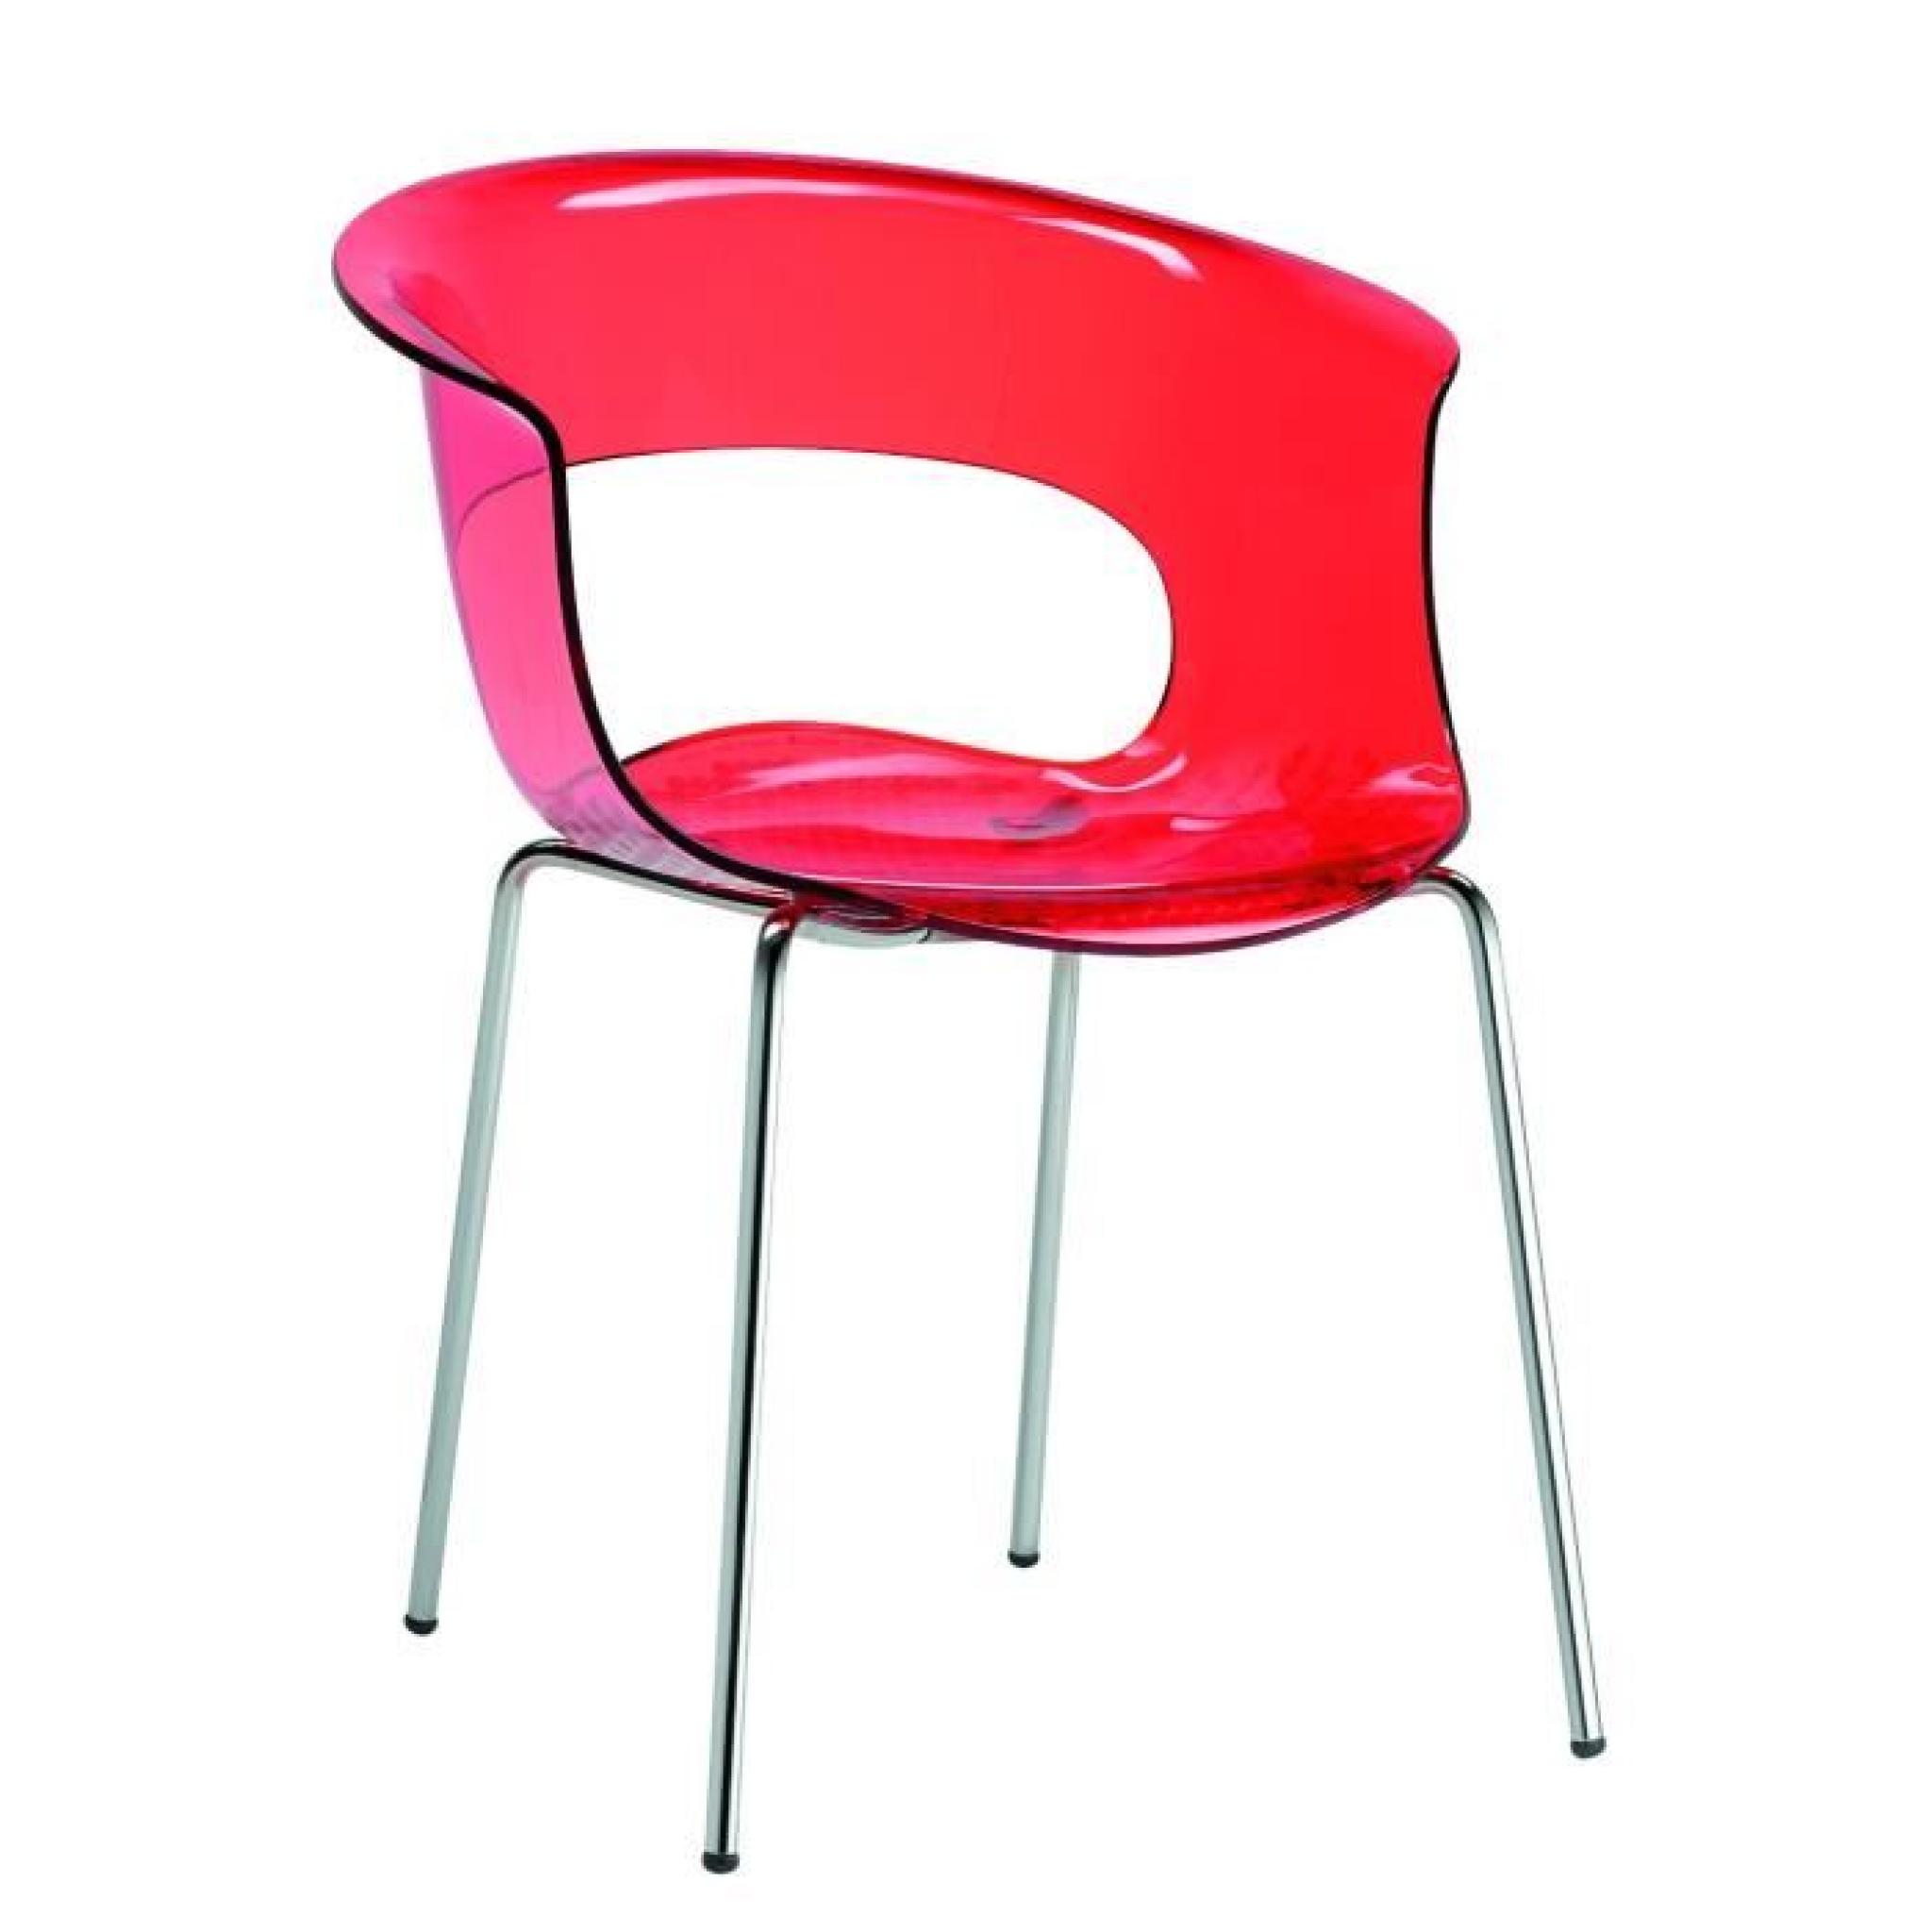 Chaise design - MISS B ANTICHOCK 4 legs - deco Rouge brillant